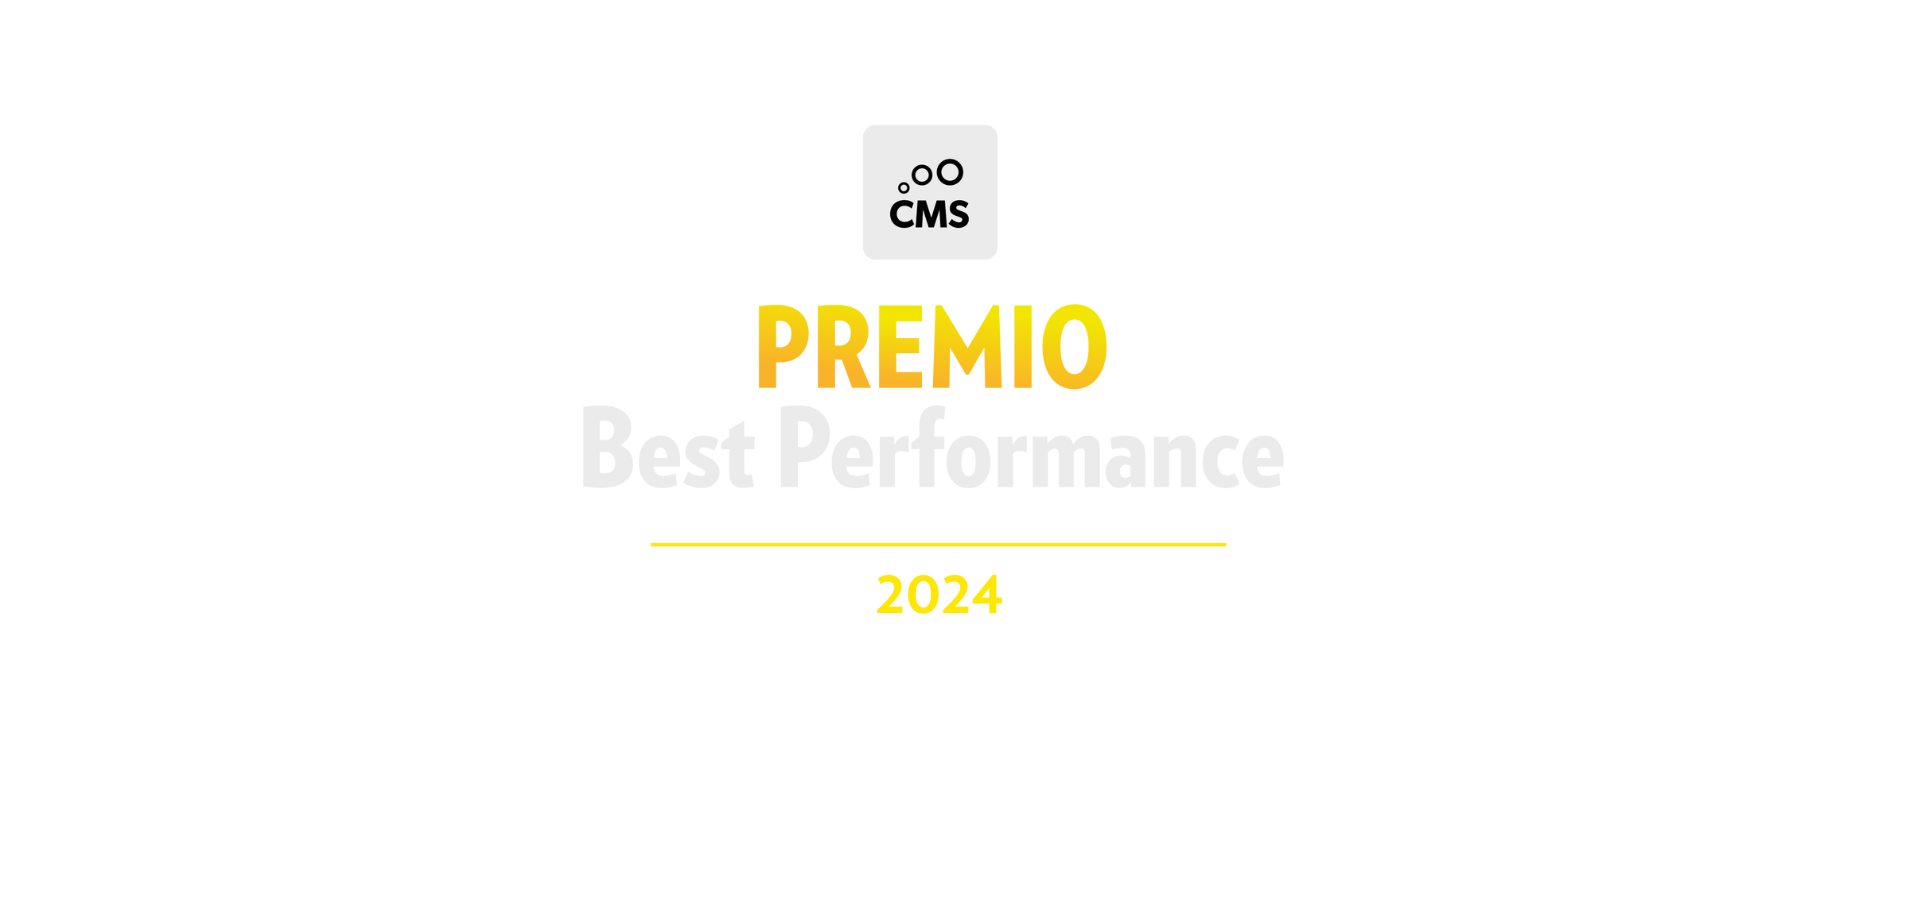 Premio Best Performance 2024 - Latam 24 de octubre - CMS